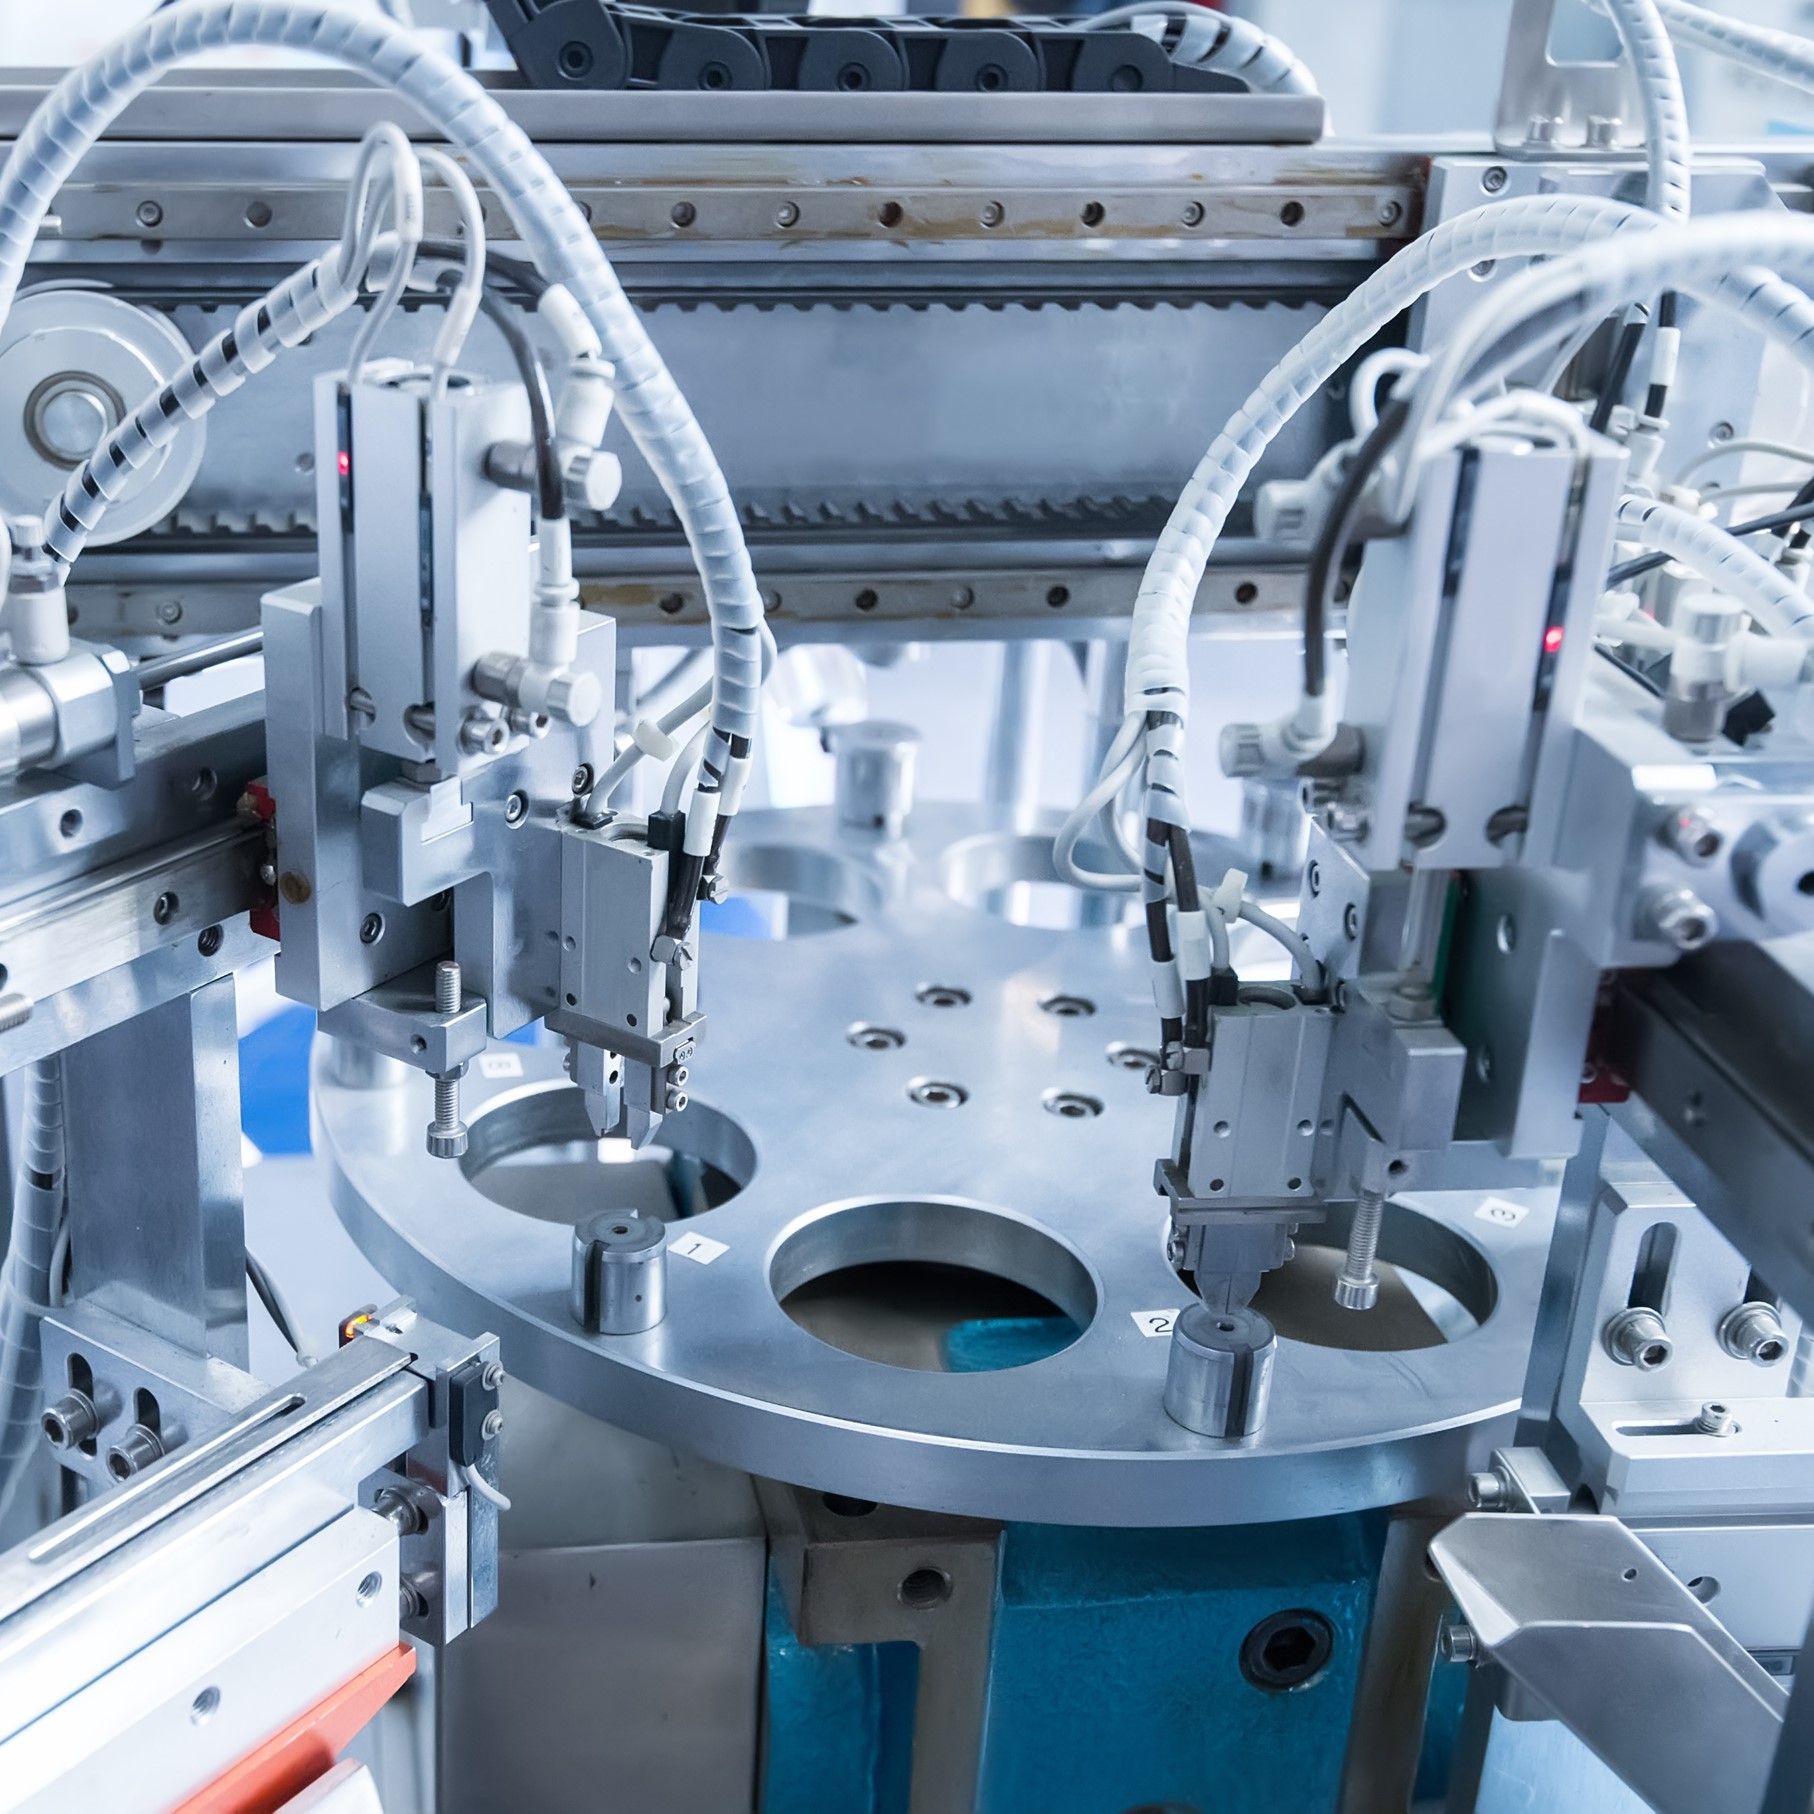 Soluzione di connettività industriale per l'automazione di fabbrica e ambienti medici difficili.